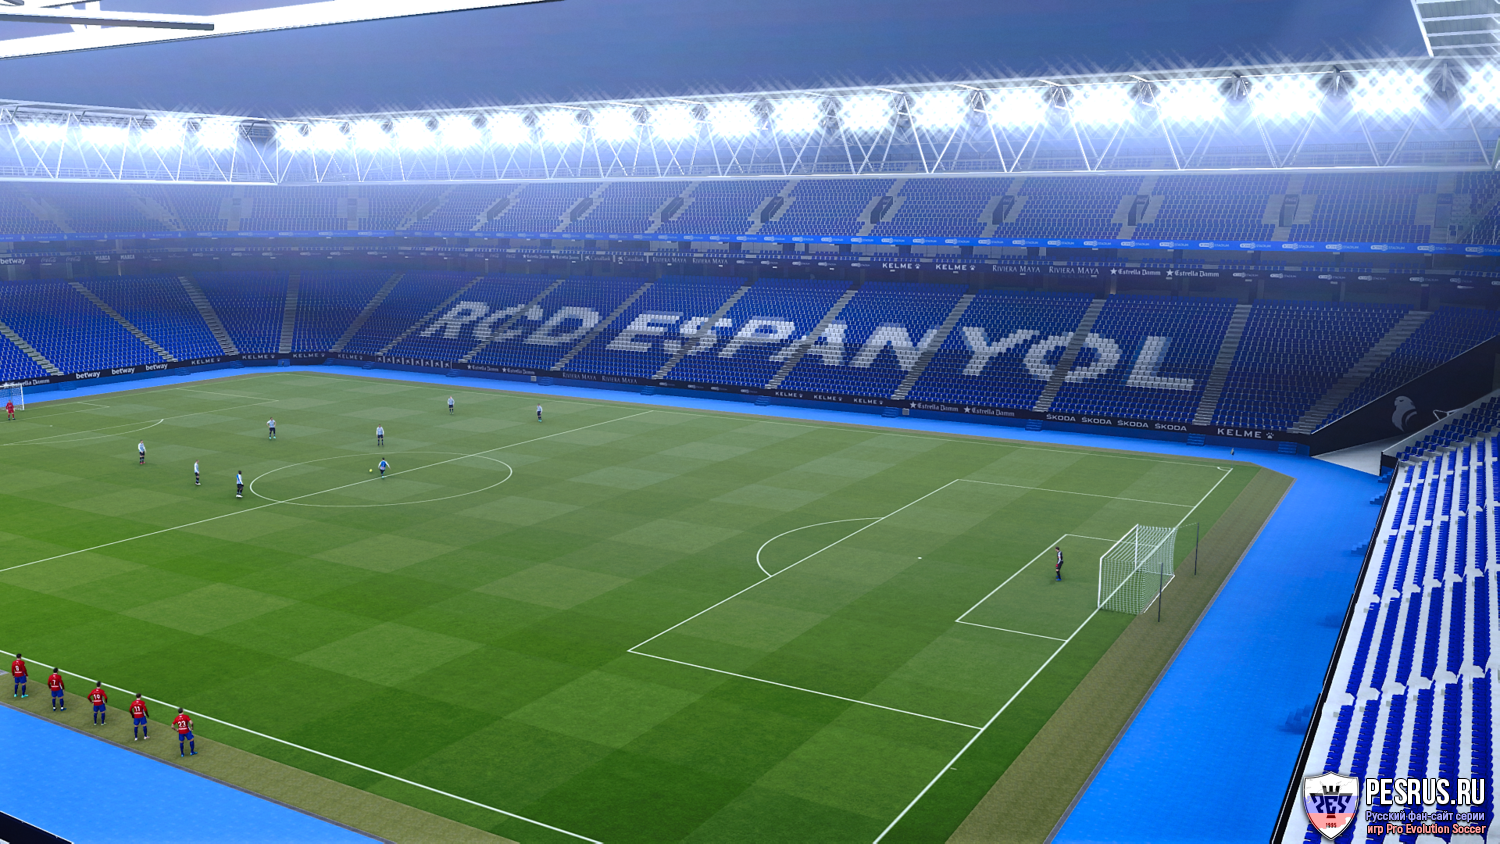 Дополнение для PES 2021, которое добавит новый стадион Корнелья-Эль Прат ил...